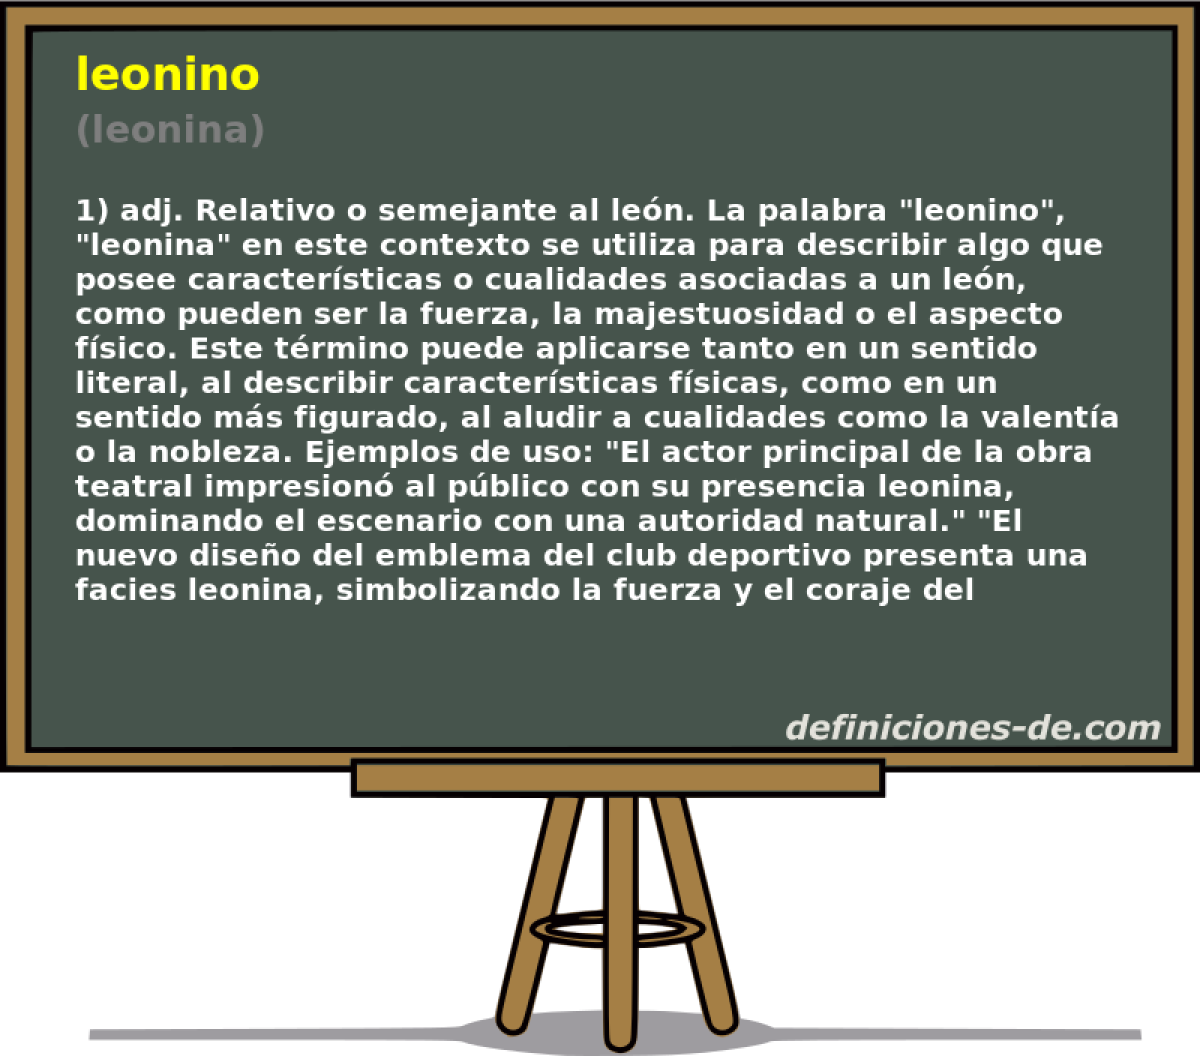 leonino (leonina)